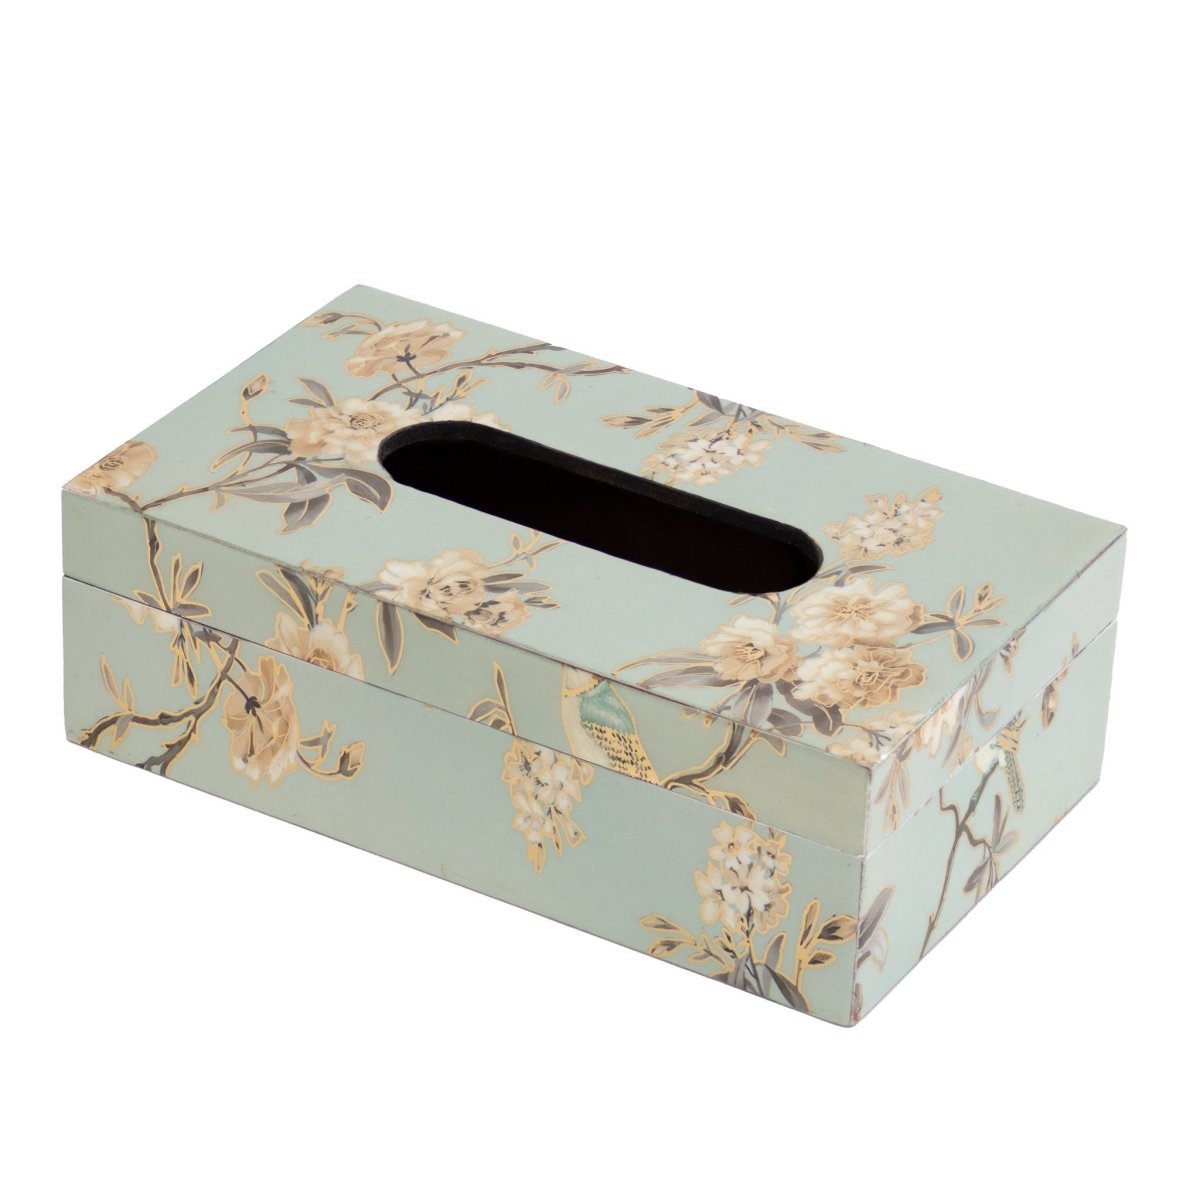 Kezevel Wooden Tissue Paper Holder - Rectangular Tissue Paper Dispenser, Tissue Paper Box for Dinning Table, Car, Home